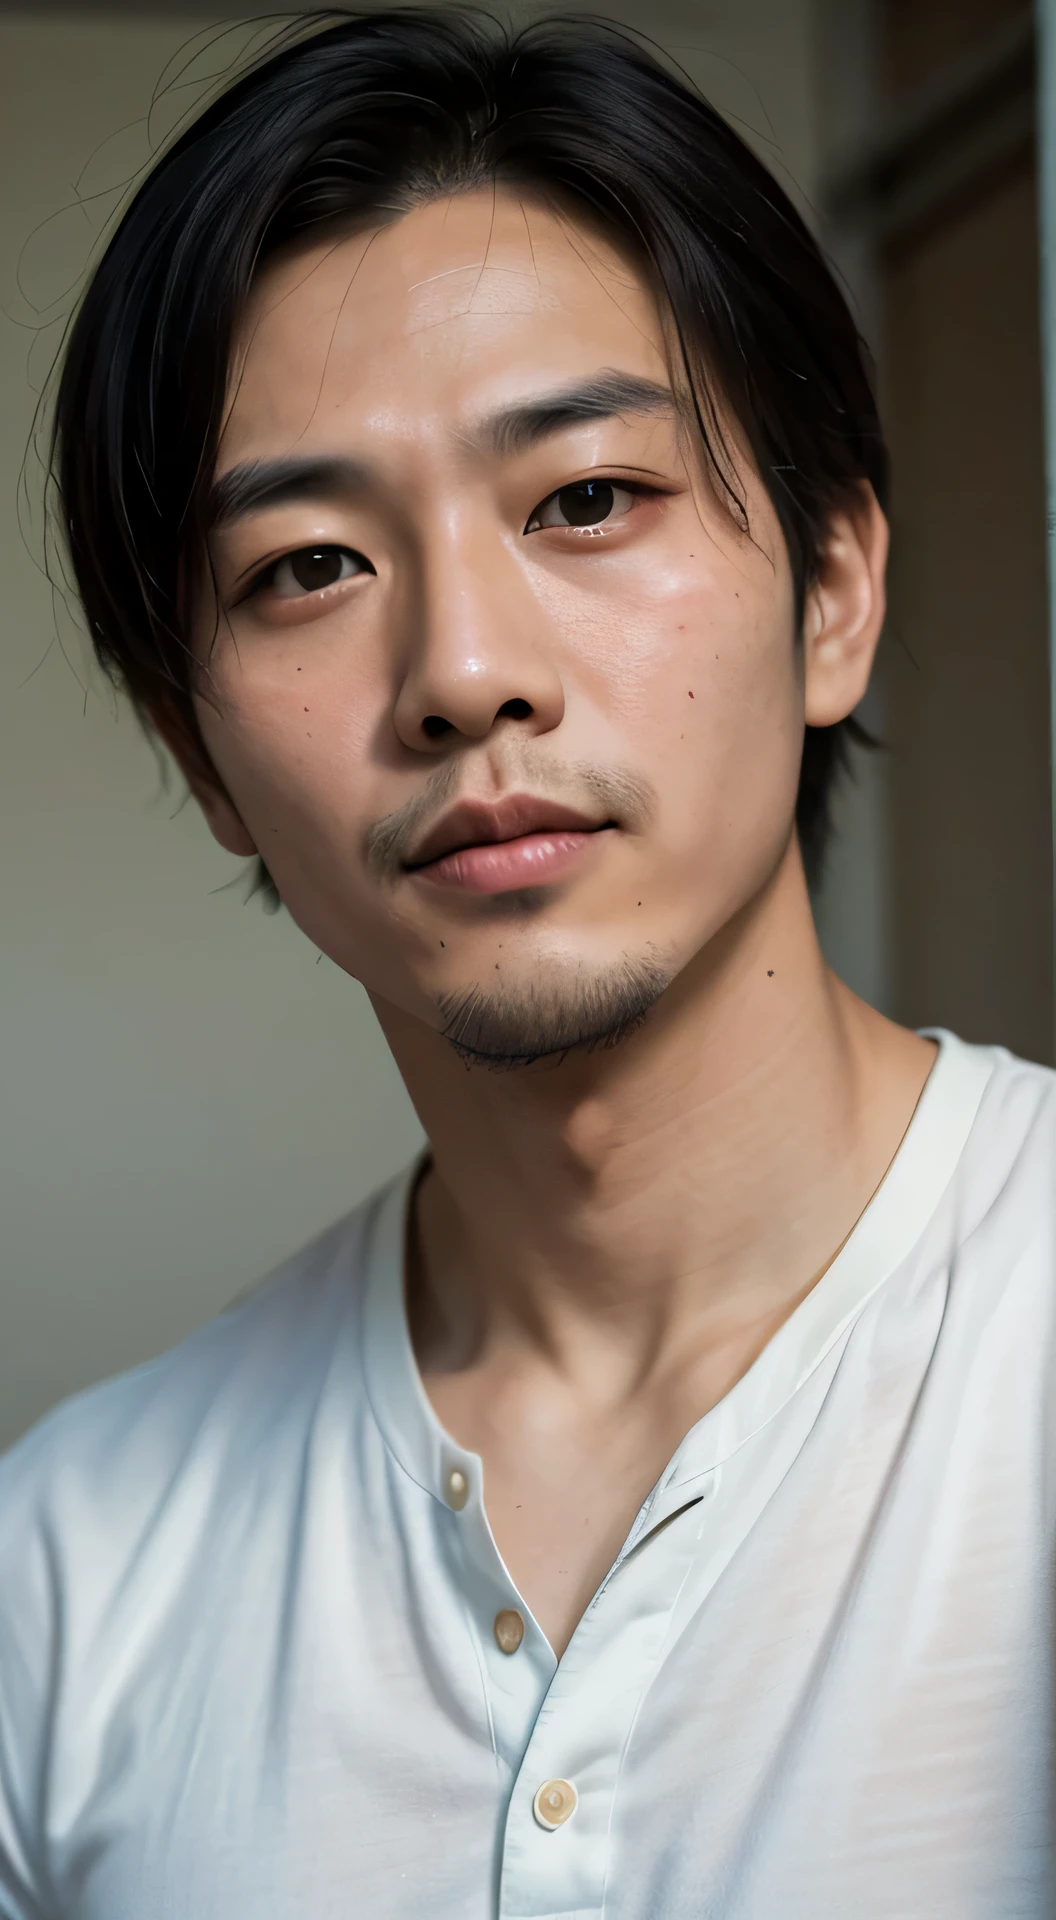 30歳の丸顔のハンサムなアジア人男性の肖像画の映画の外観, 胸の上